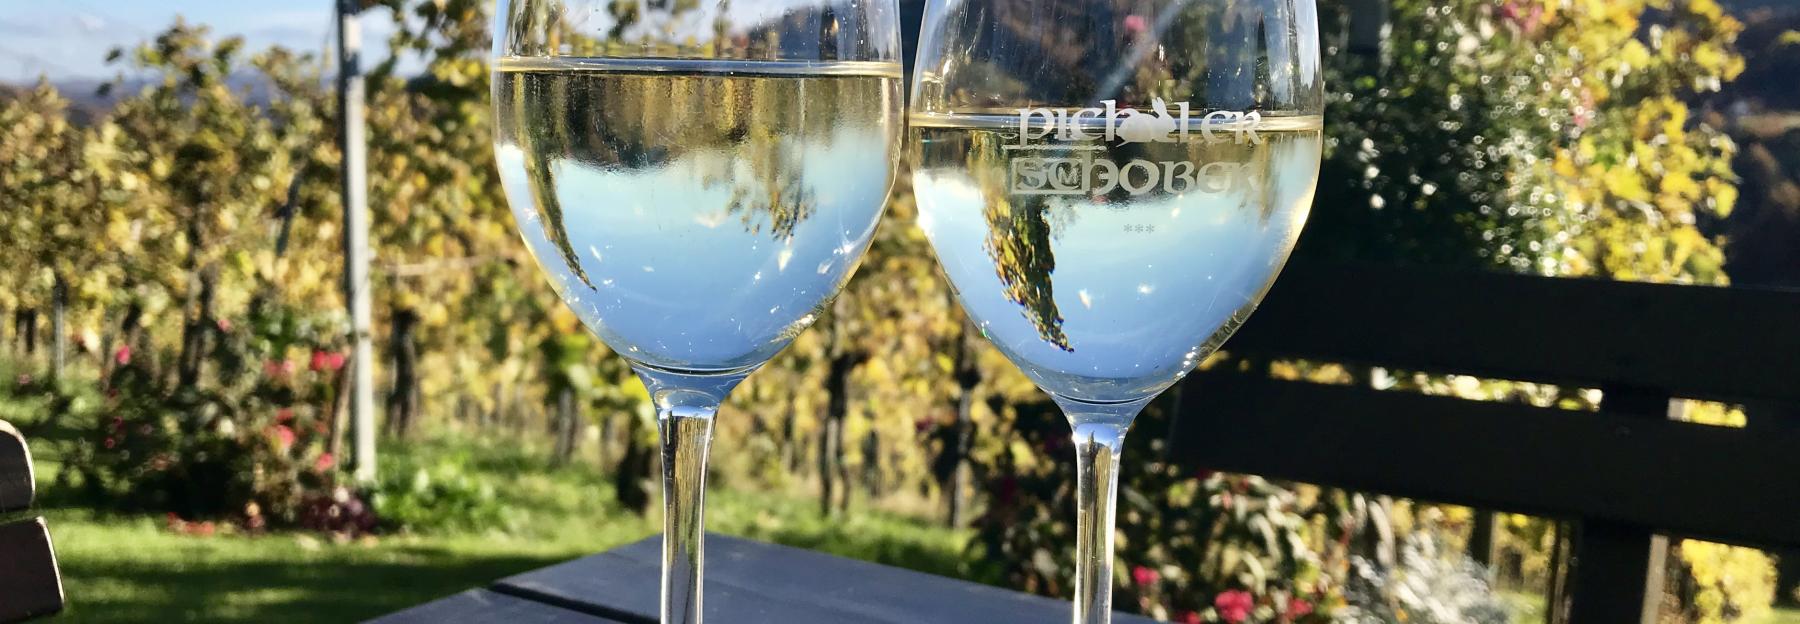 2 Weingläser auf einem Tisch, im Hintergrund Weingarten und blauer Himmel